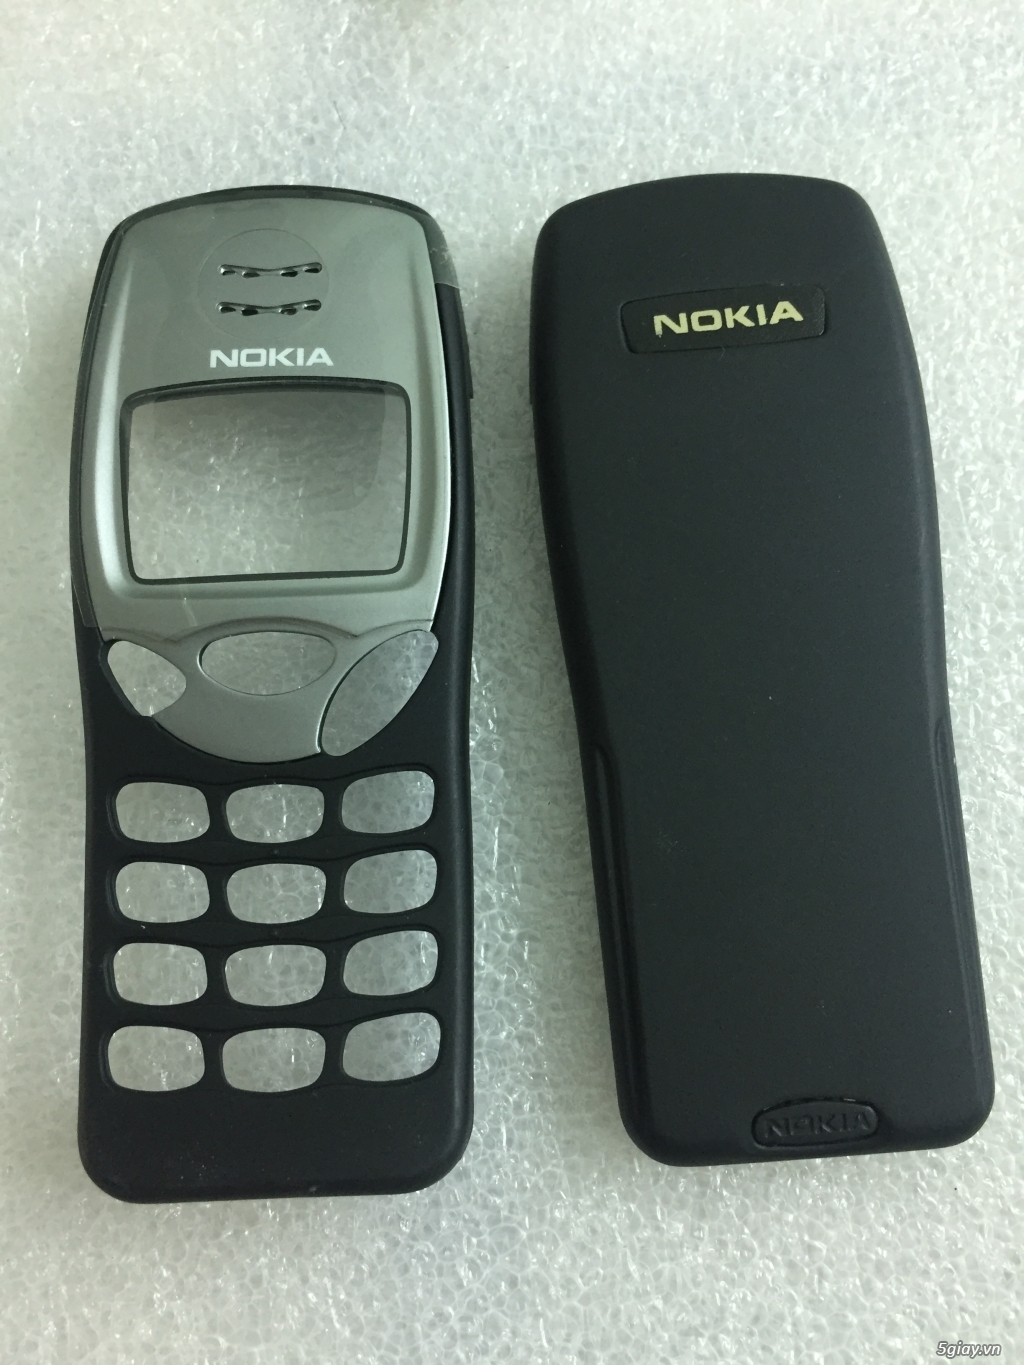 [HCM] - Nokia cũ cổ các loại rẻ bền đẹp AE ghé xem chọn lựa. - 7